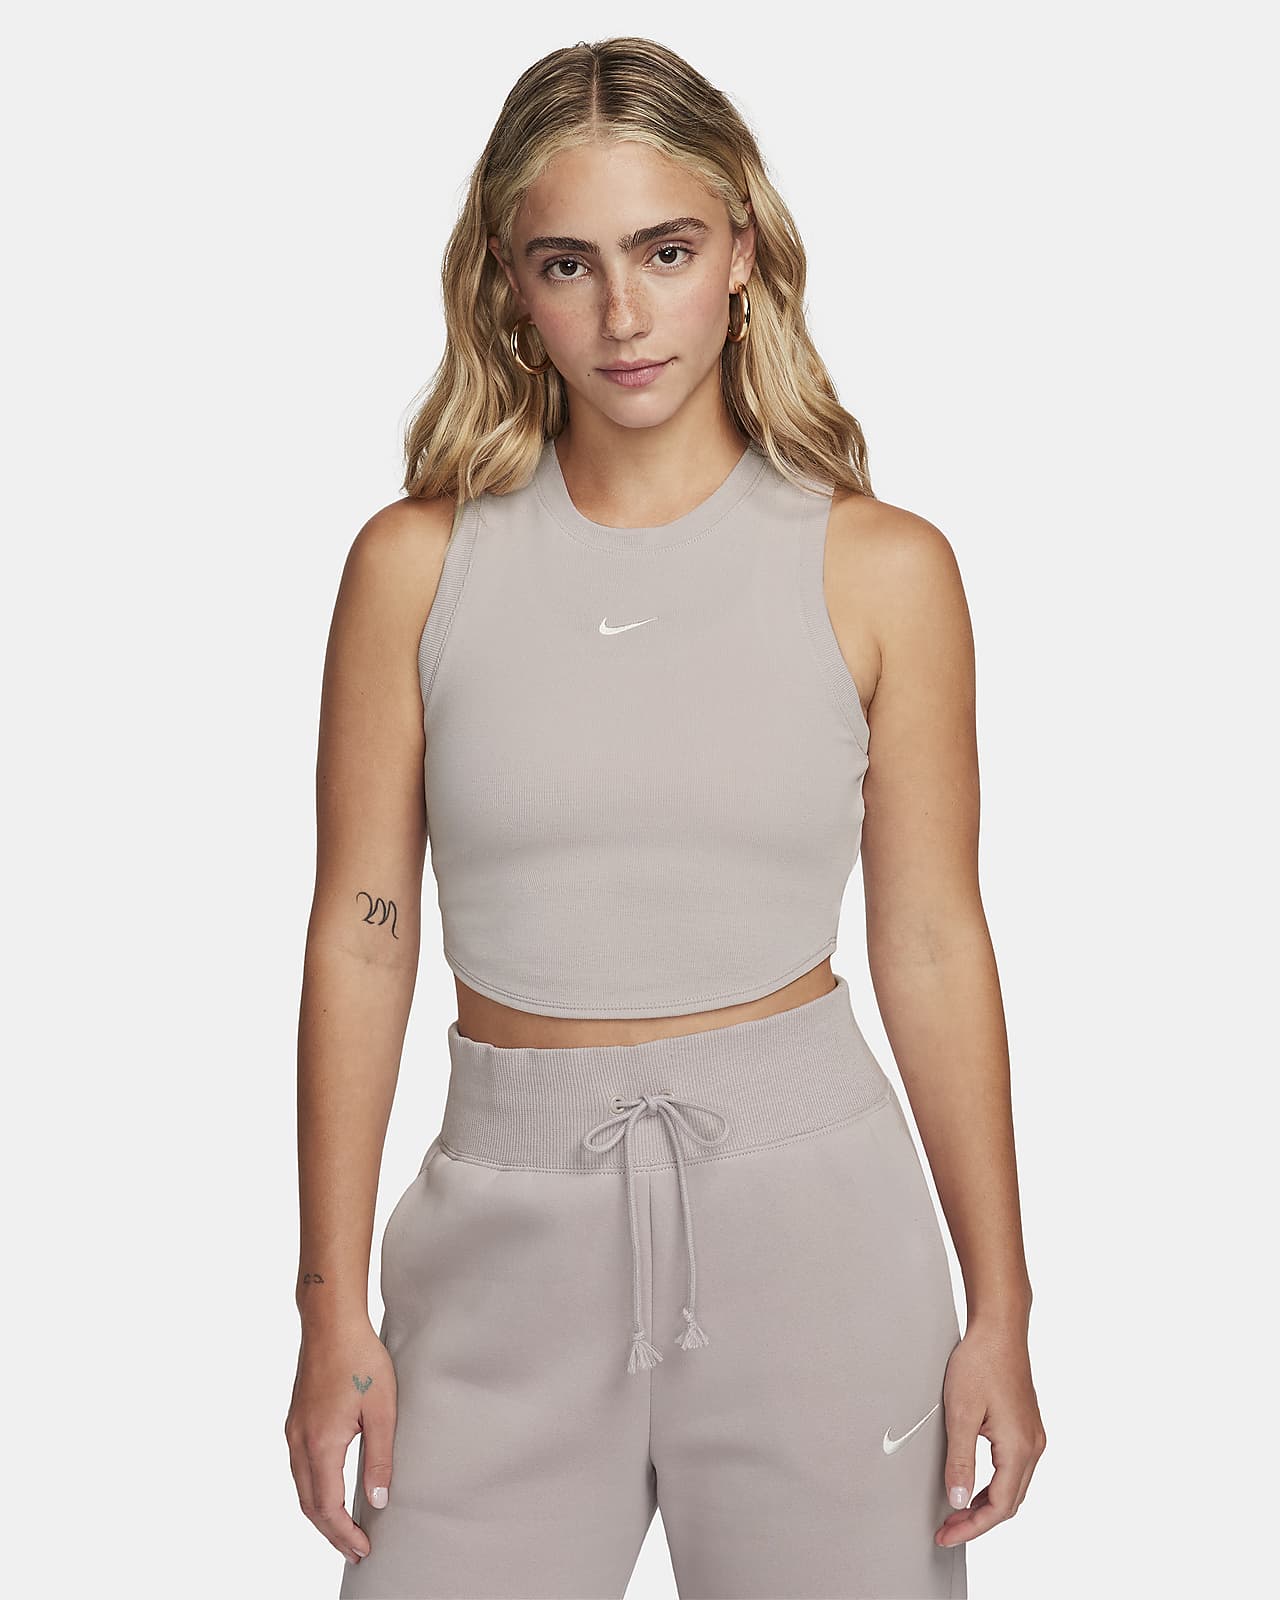 Canotta corta e aderente a mini costine Nike Sportswear Chill Knit – Donna